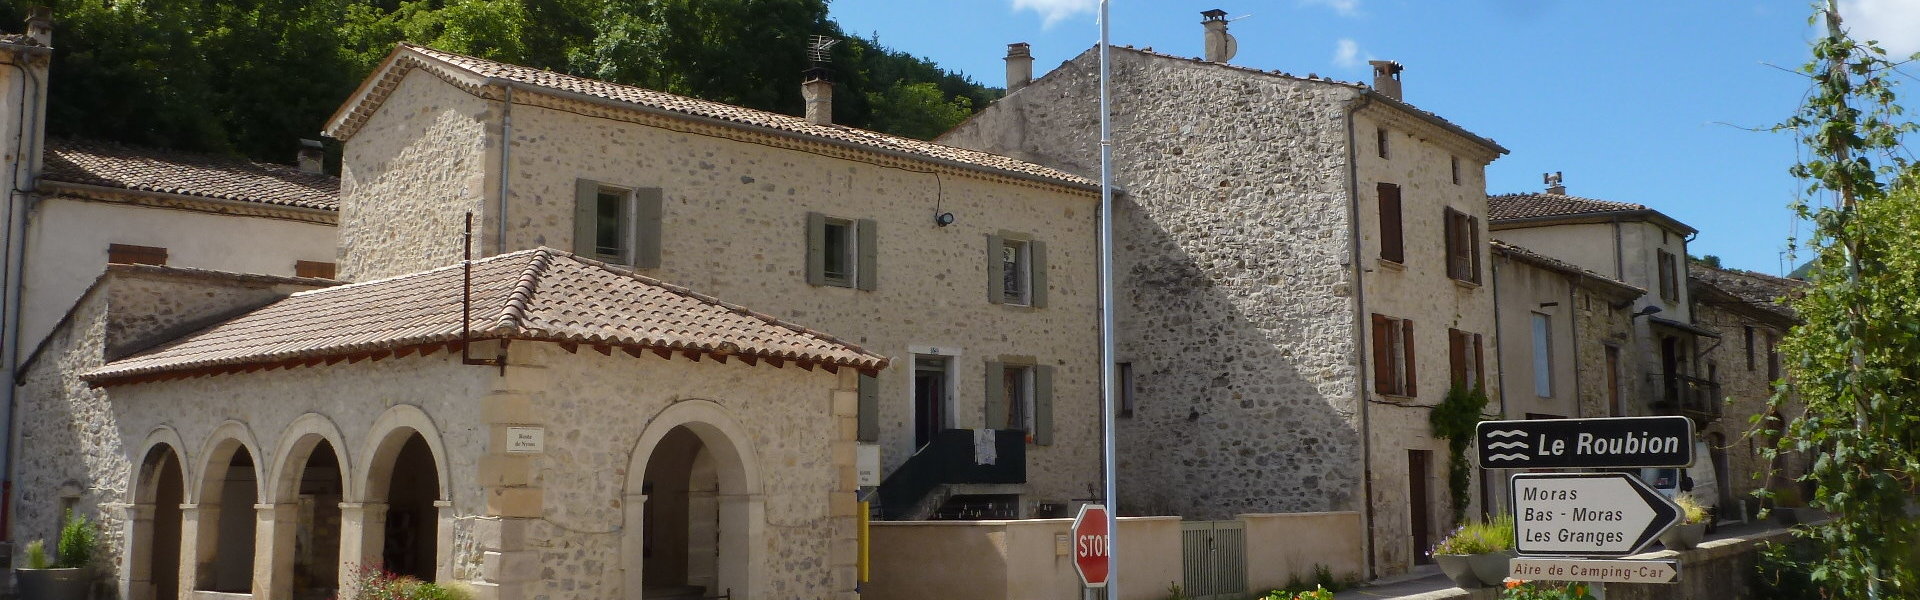 Sivom du Pays de Bourdeaux - Commune de Bouvières - Département de la Drôme